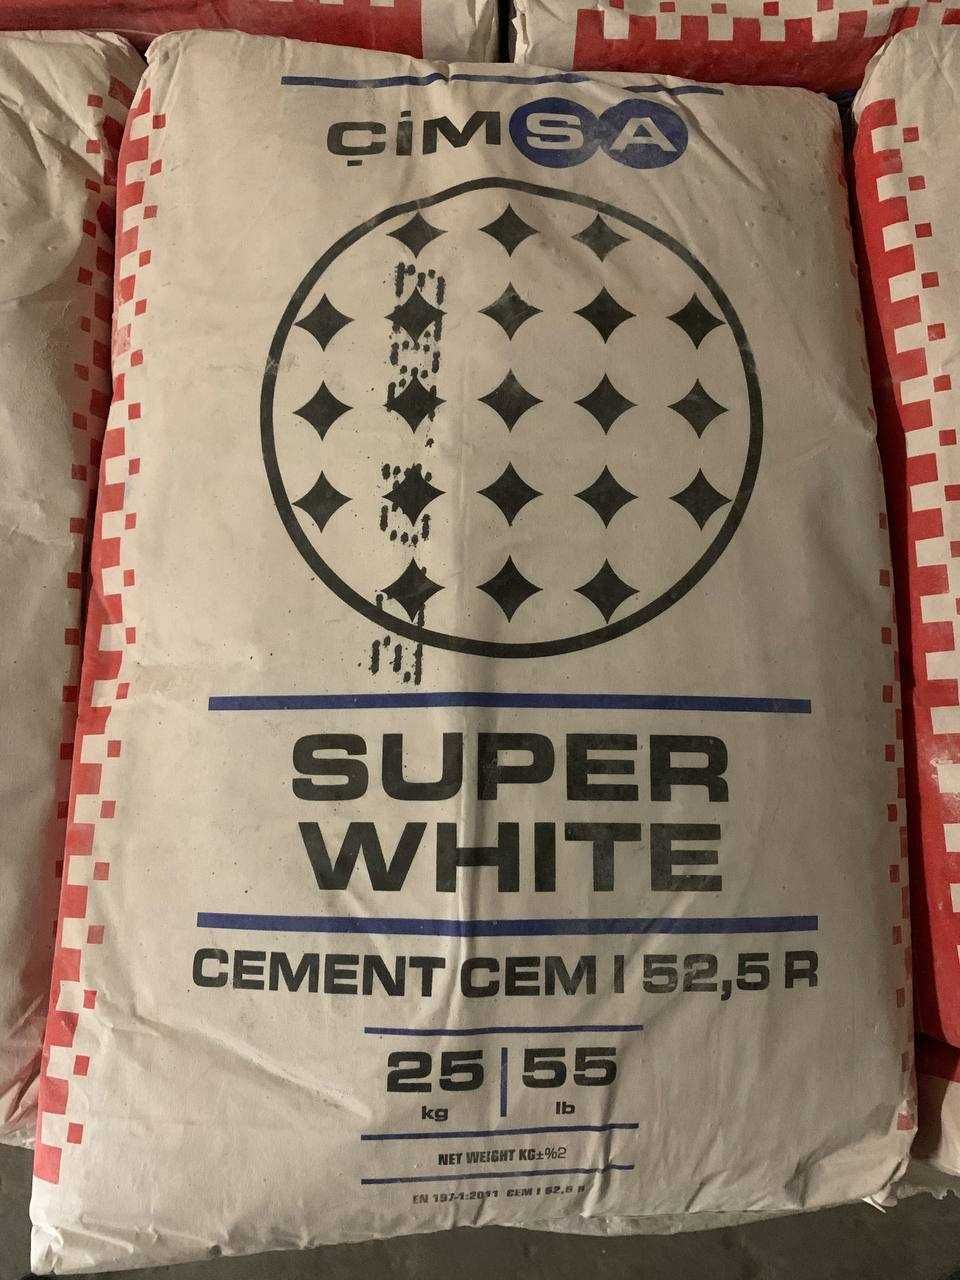 Цемент білий CIMSA M-600 I 52,5 R, Туреччина, мішок 25 кг